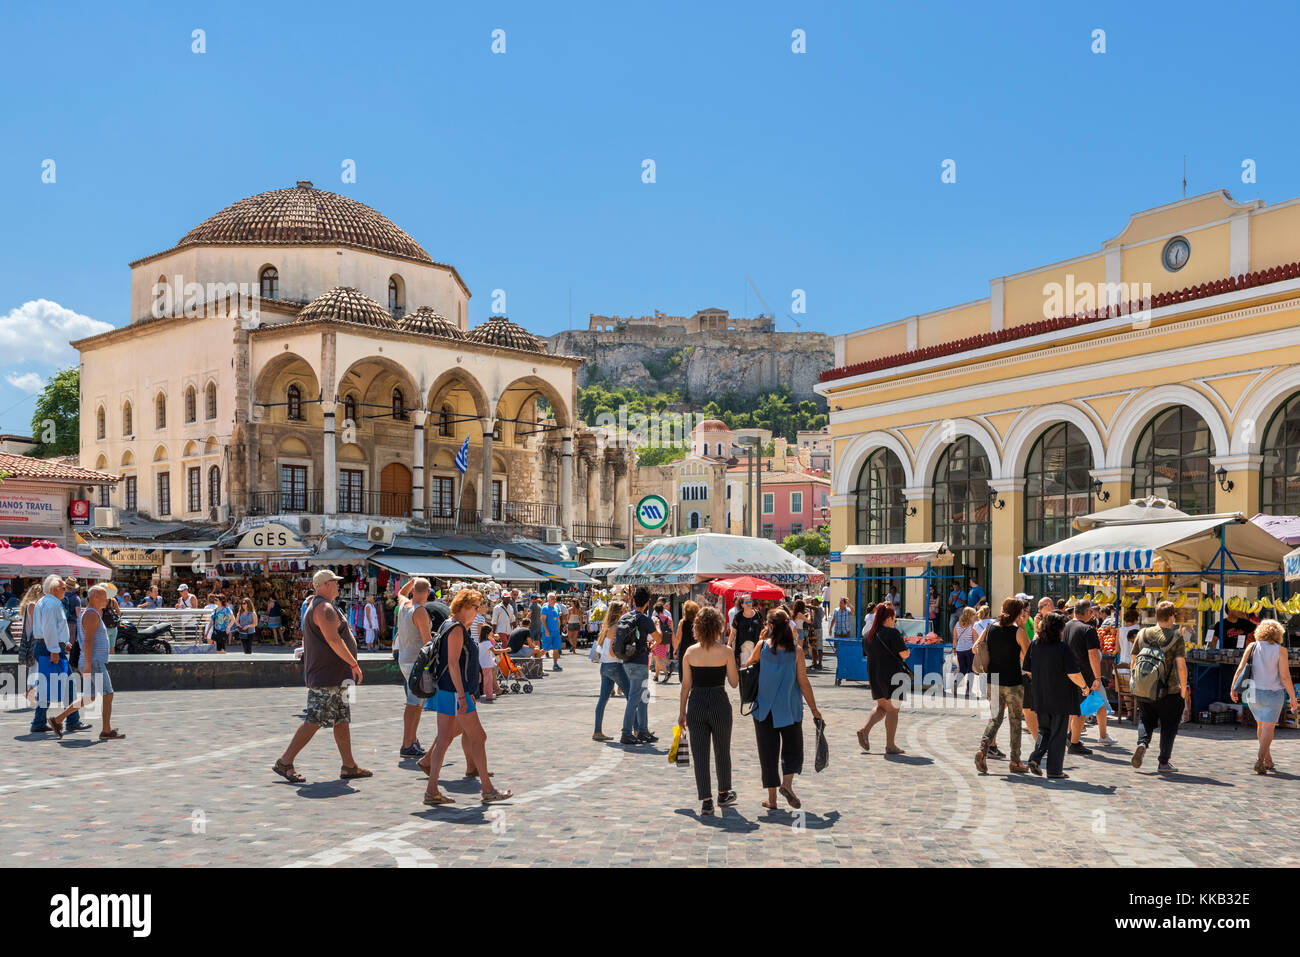 Shops and flea market stalls in Monastiraki Square (Platia Monastirakiou) with the Acropolis in the distance, Monastiraki, Athens, Greece Stock Photo